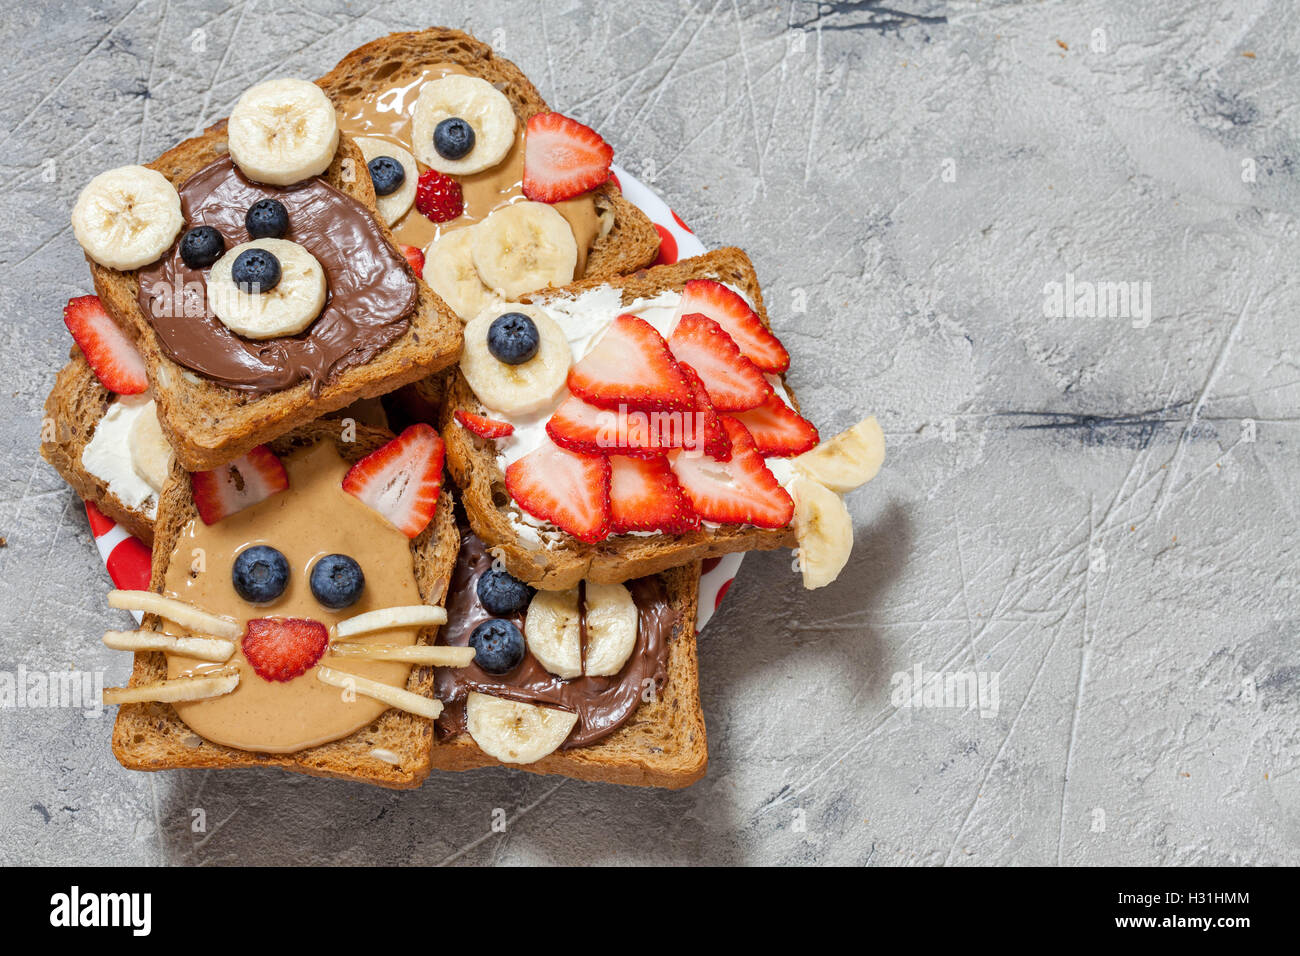 Lustige Tier Gesichter Toast mit Spreads, Banane, Erdbeere und Heidelbeere Stockfoto